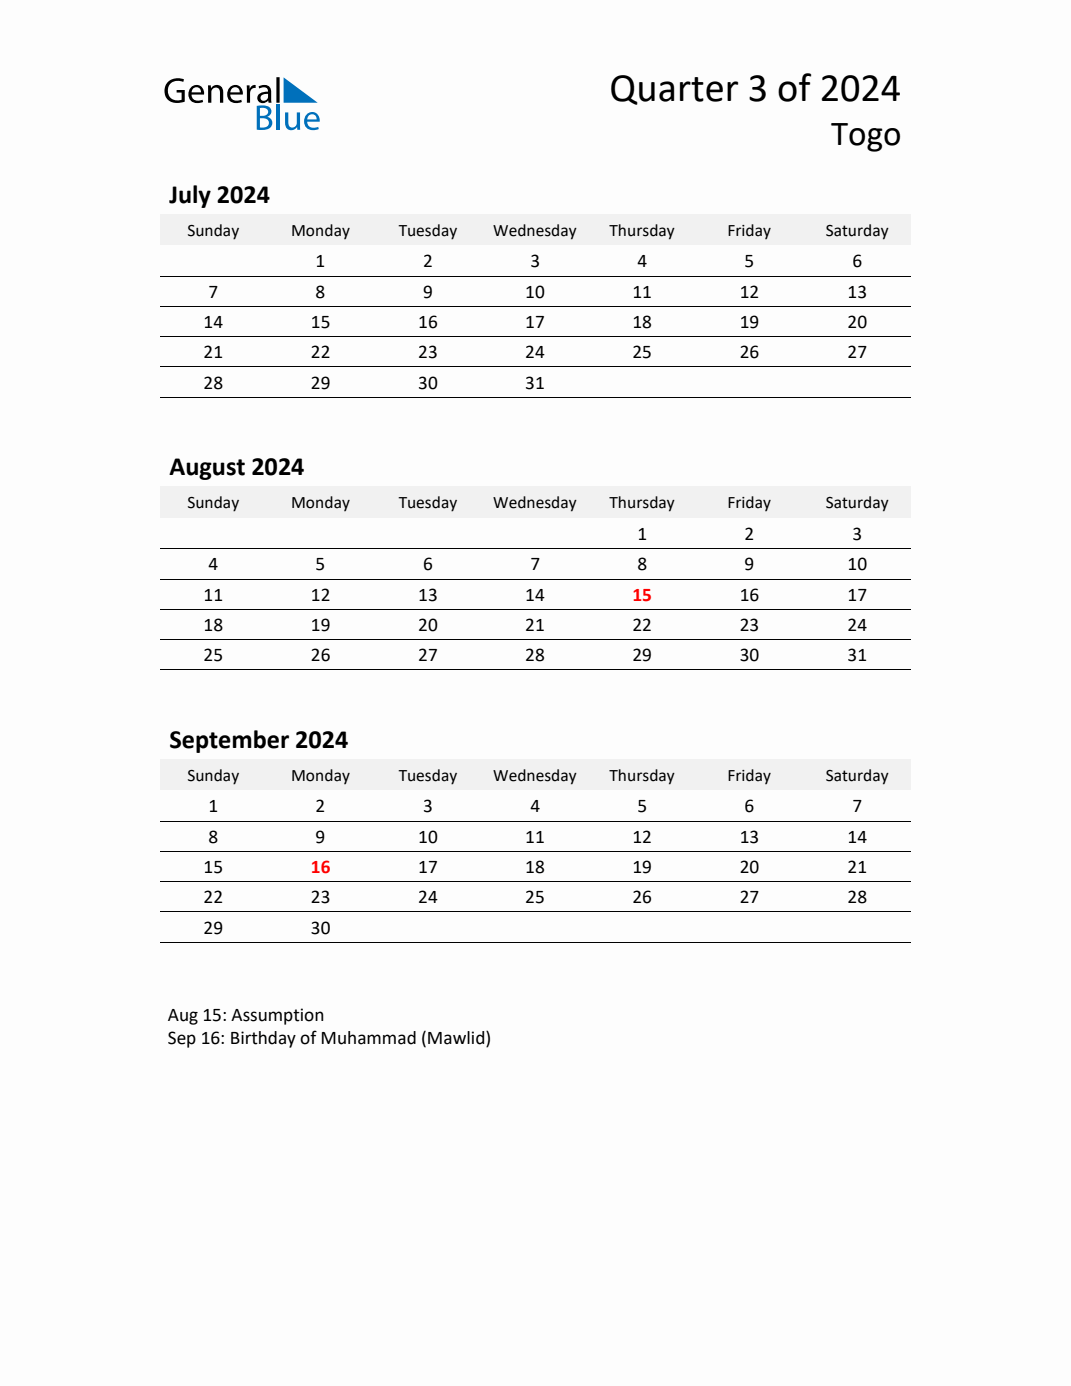 Q3 2024 Quarterly Calendar with Togo Holidays